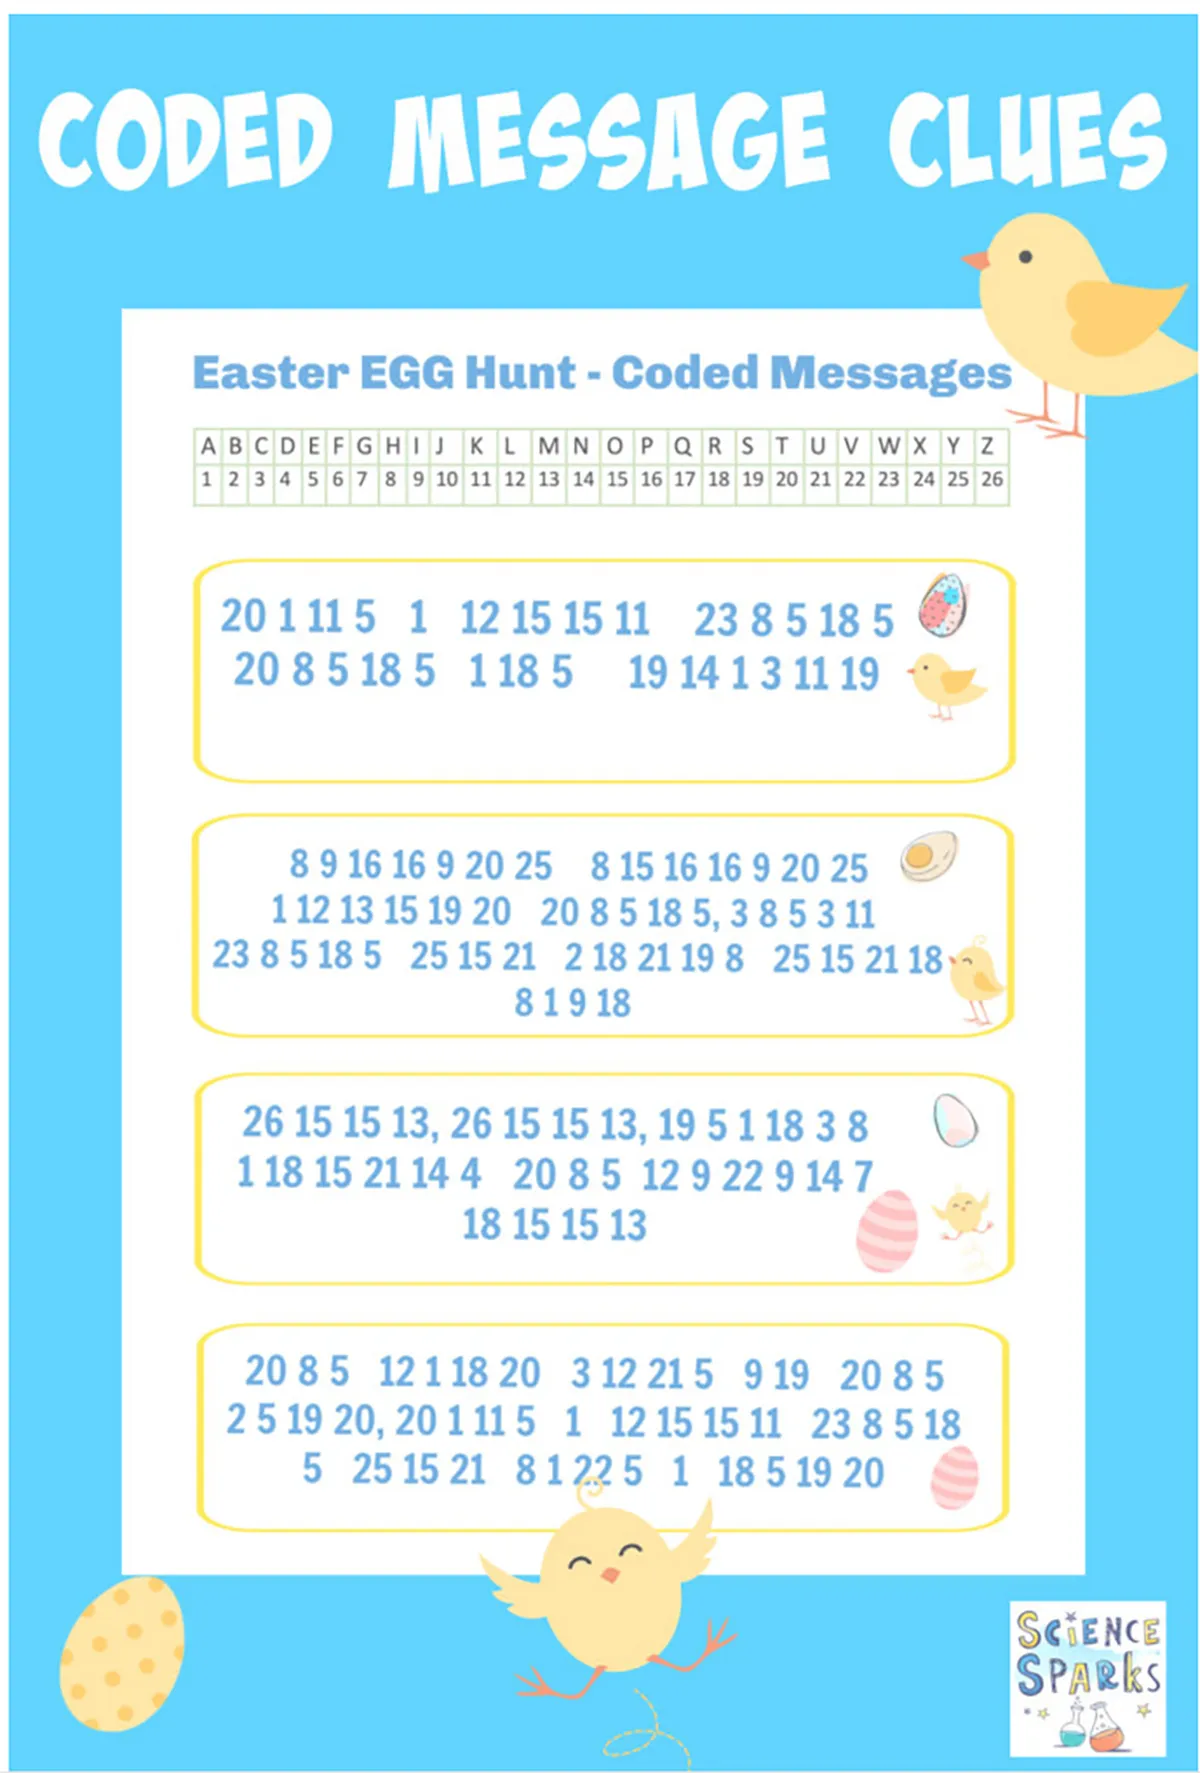 easter egg hunt ideas for kids - codes